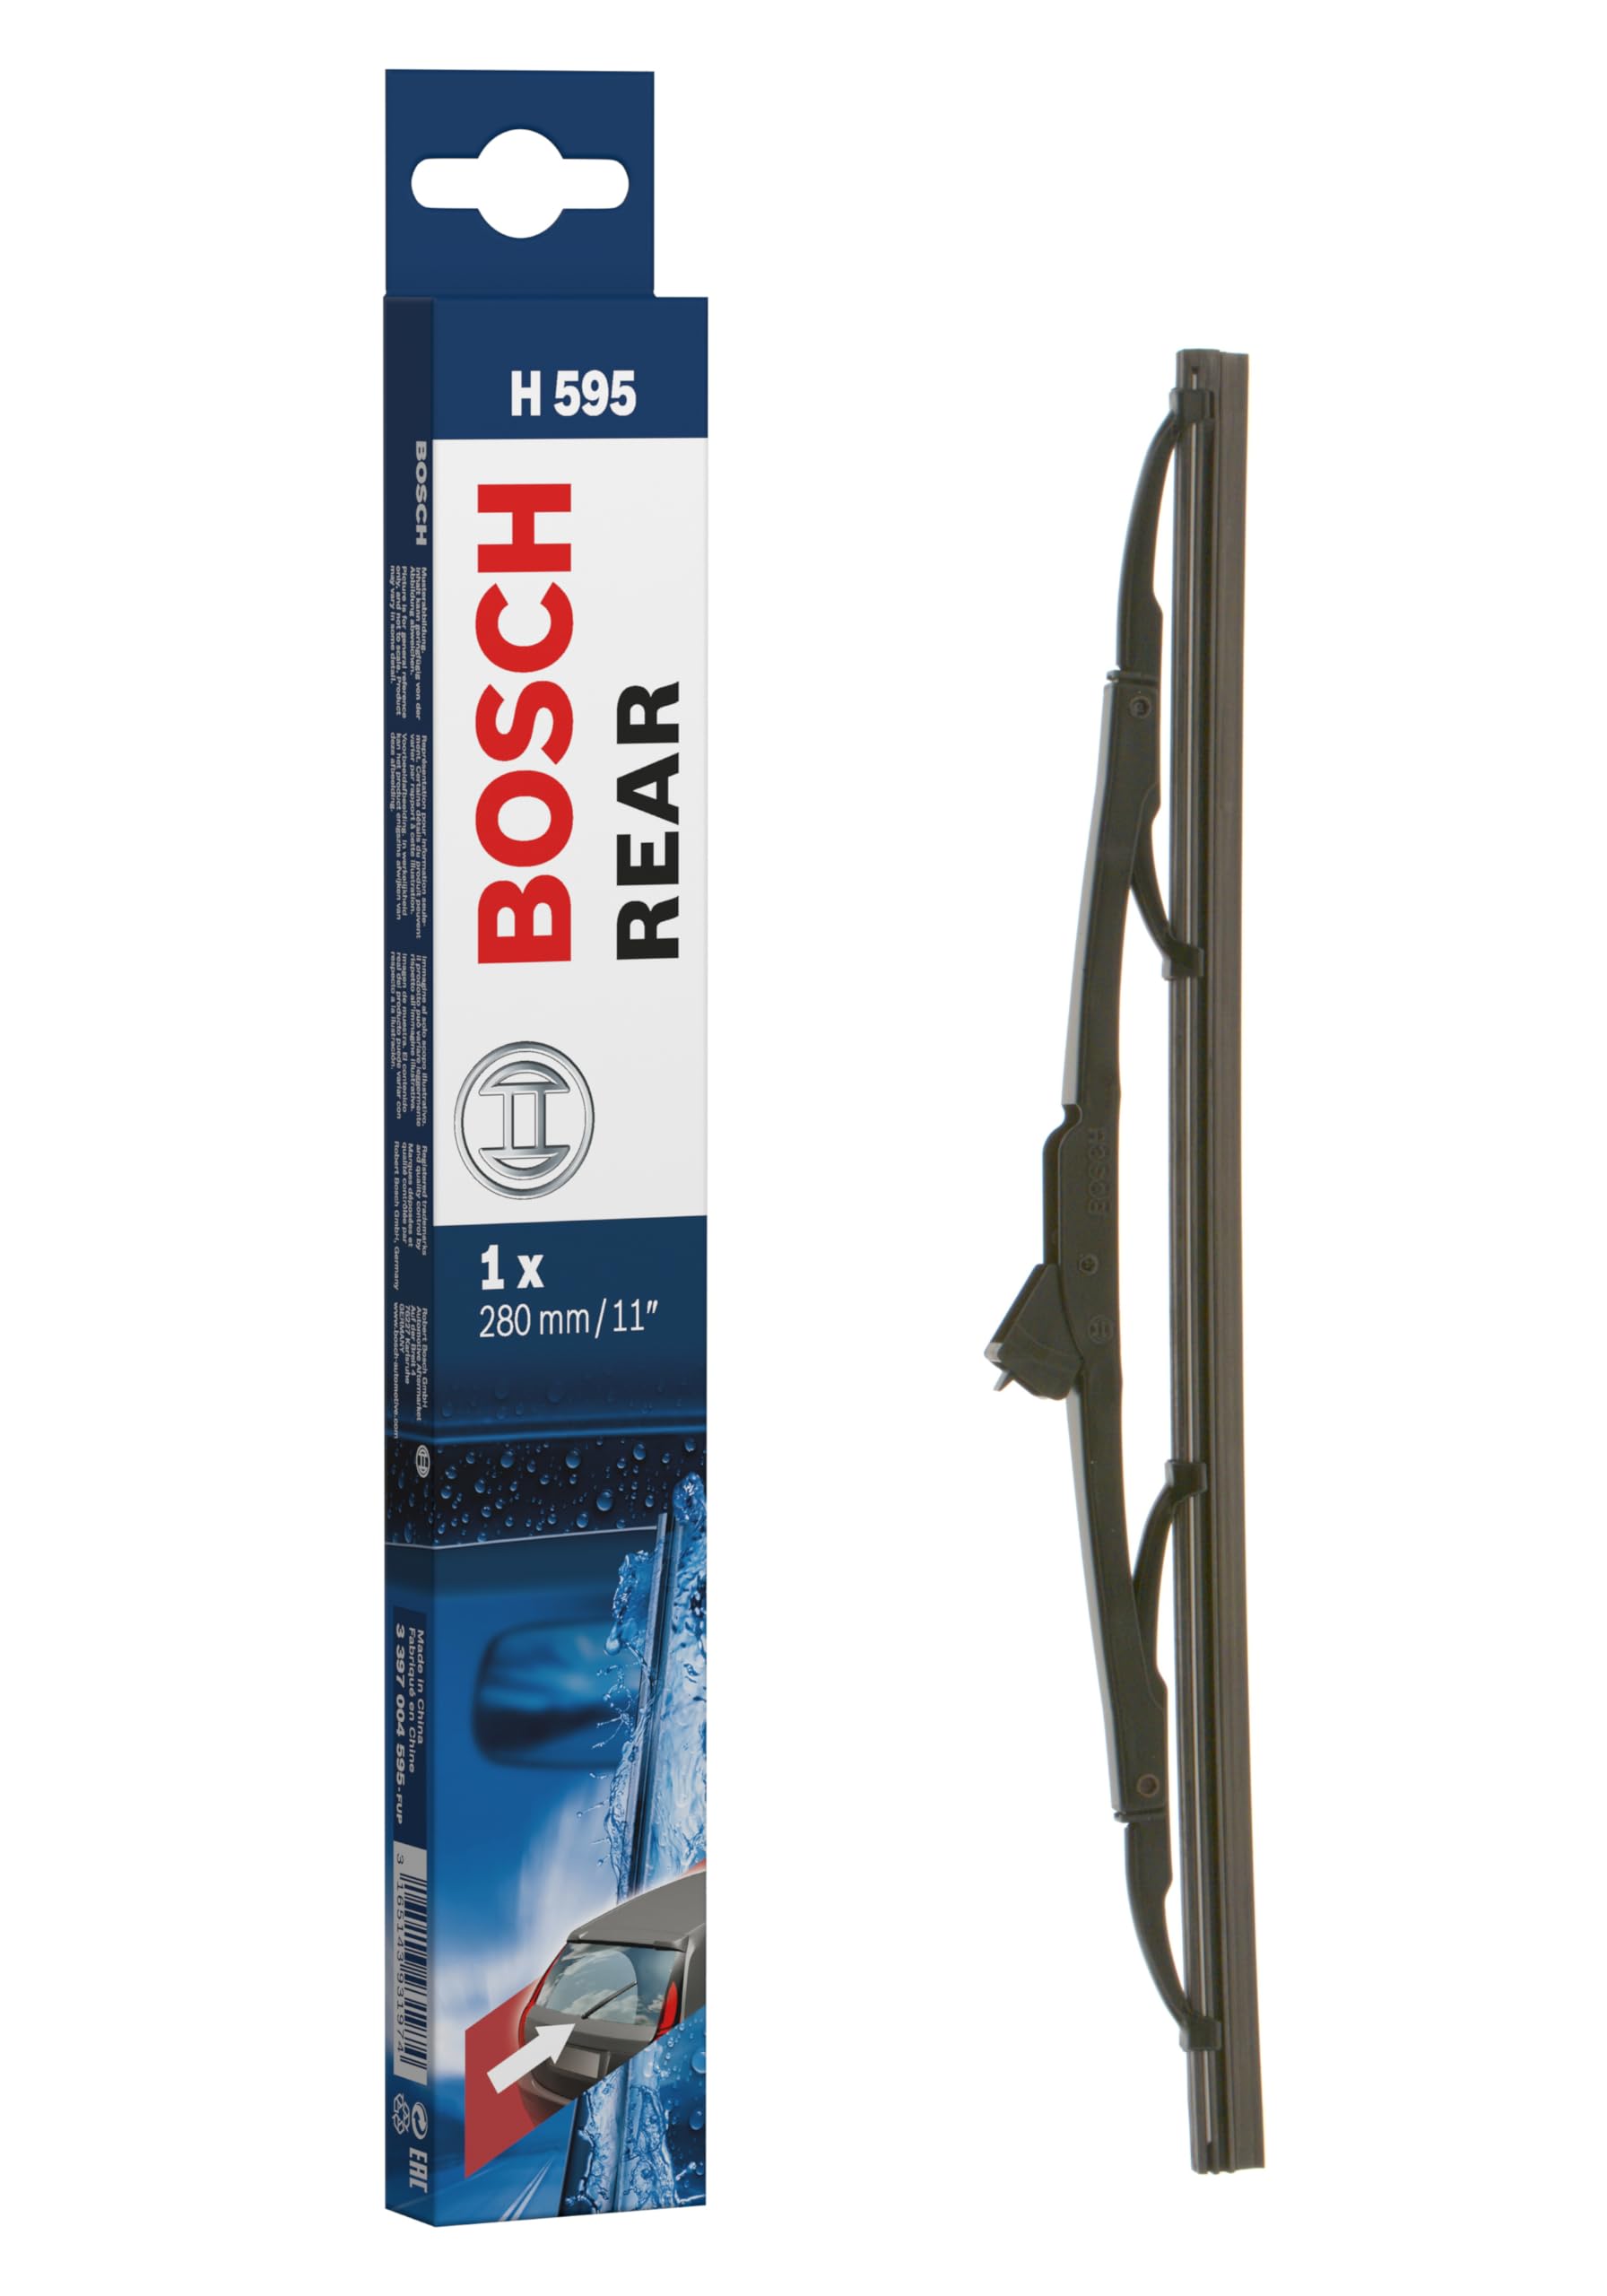 Bosch Scheibenwischer Rear H595, Länge: 280mm – Scheibenwischer für Heckscheibe von Bosch Automotive